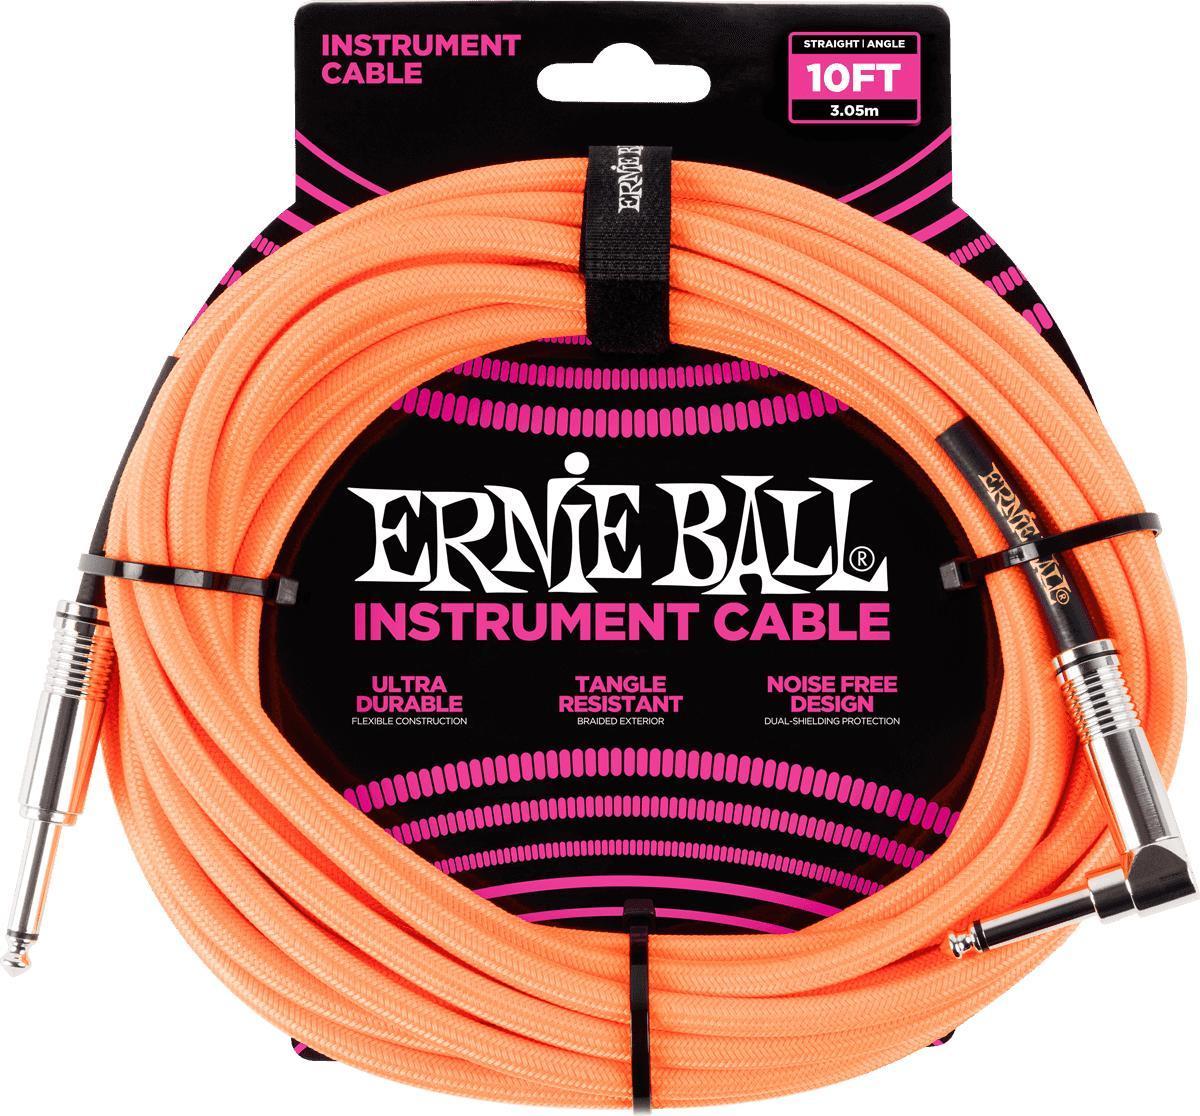 Câble Ernie ball Cables Instrument Gaine Tissée Jack/Jack Coudé 3m Orange